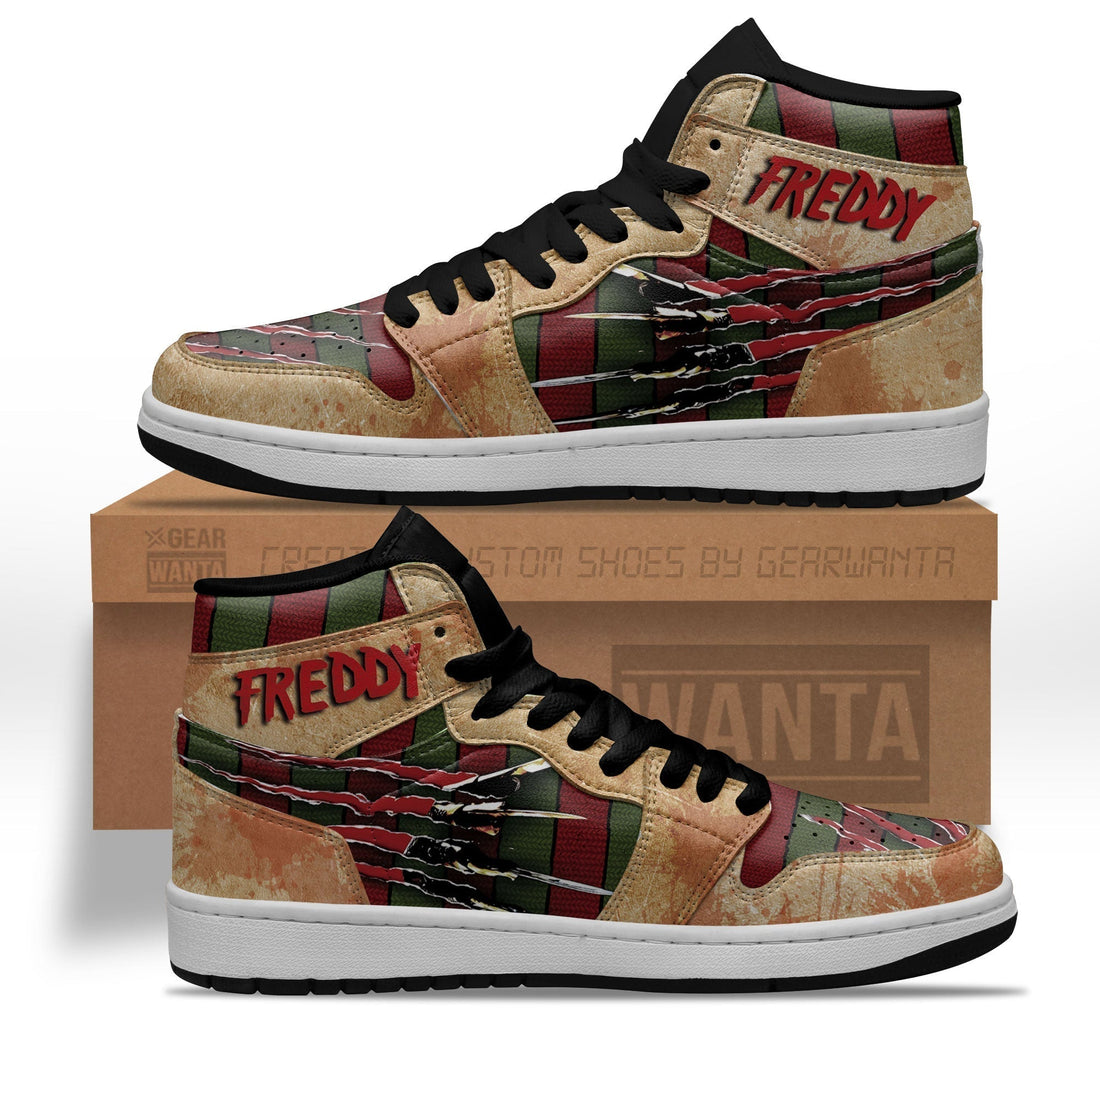 Freddy Krueger J1s Sneakers For A Nightmare on Elm Street Fans-Gear Wanta